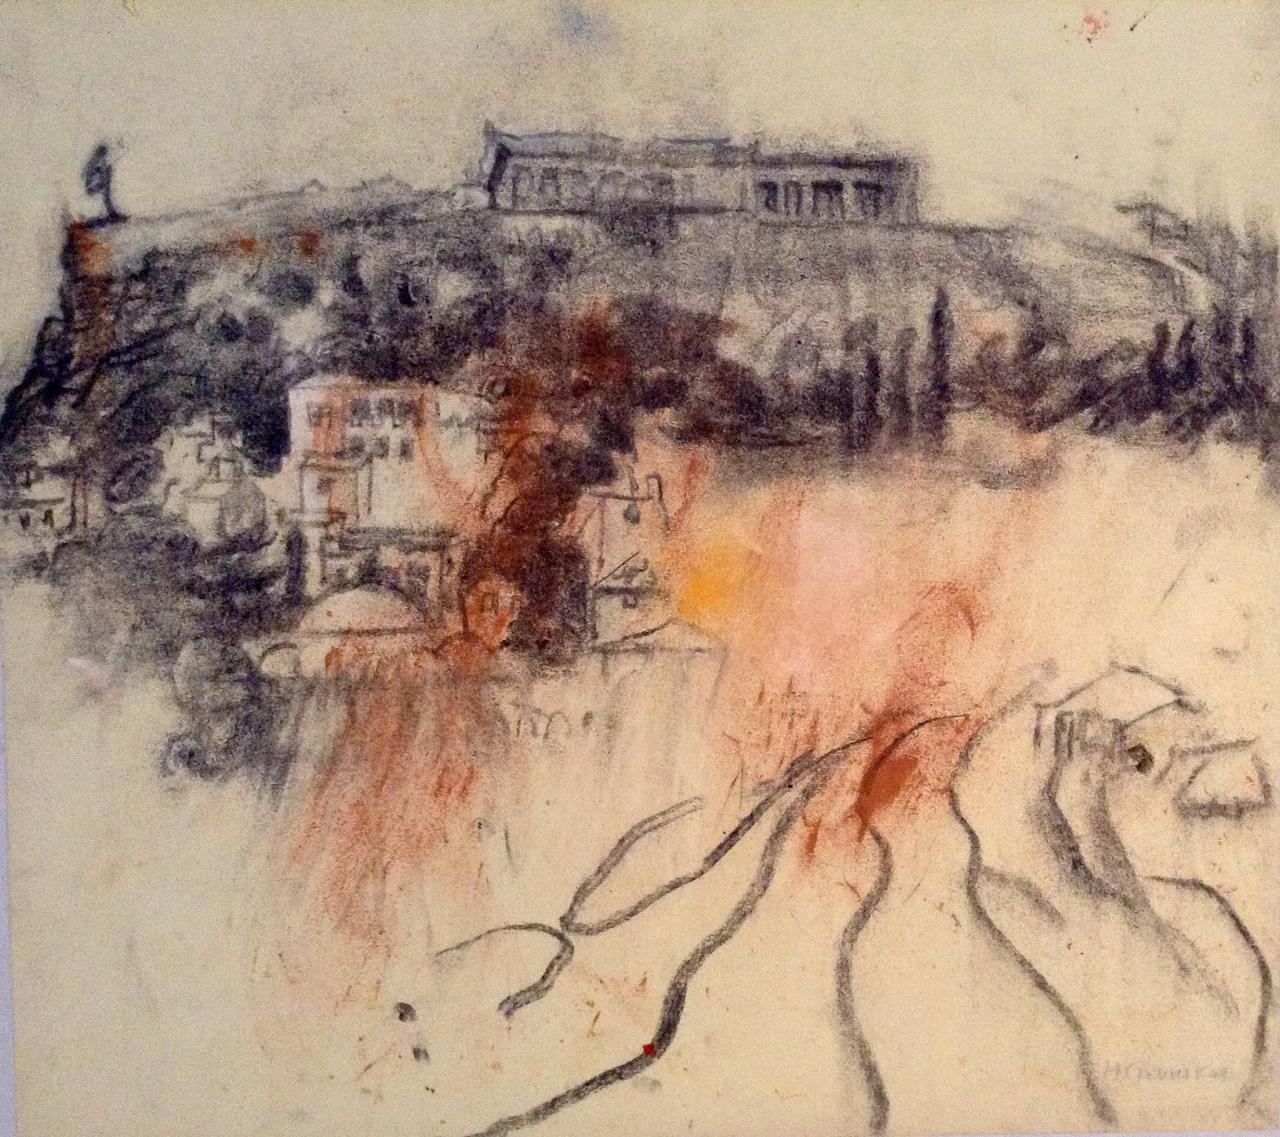 Maria Giannakaki, Acropolis, charcoal on rice paper,  42 x 42 cm, 2015